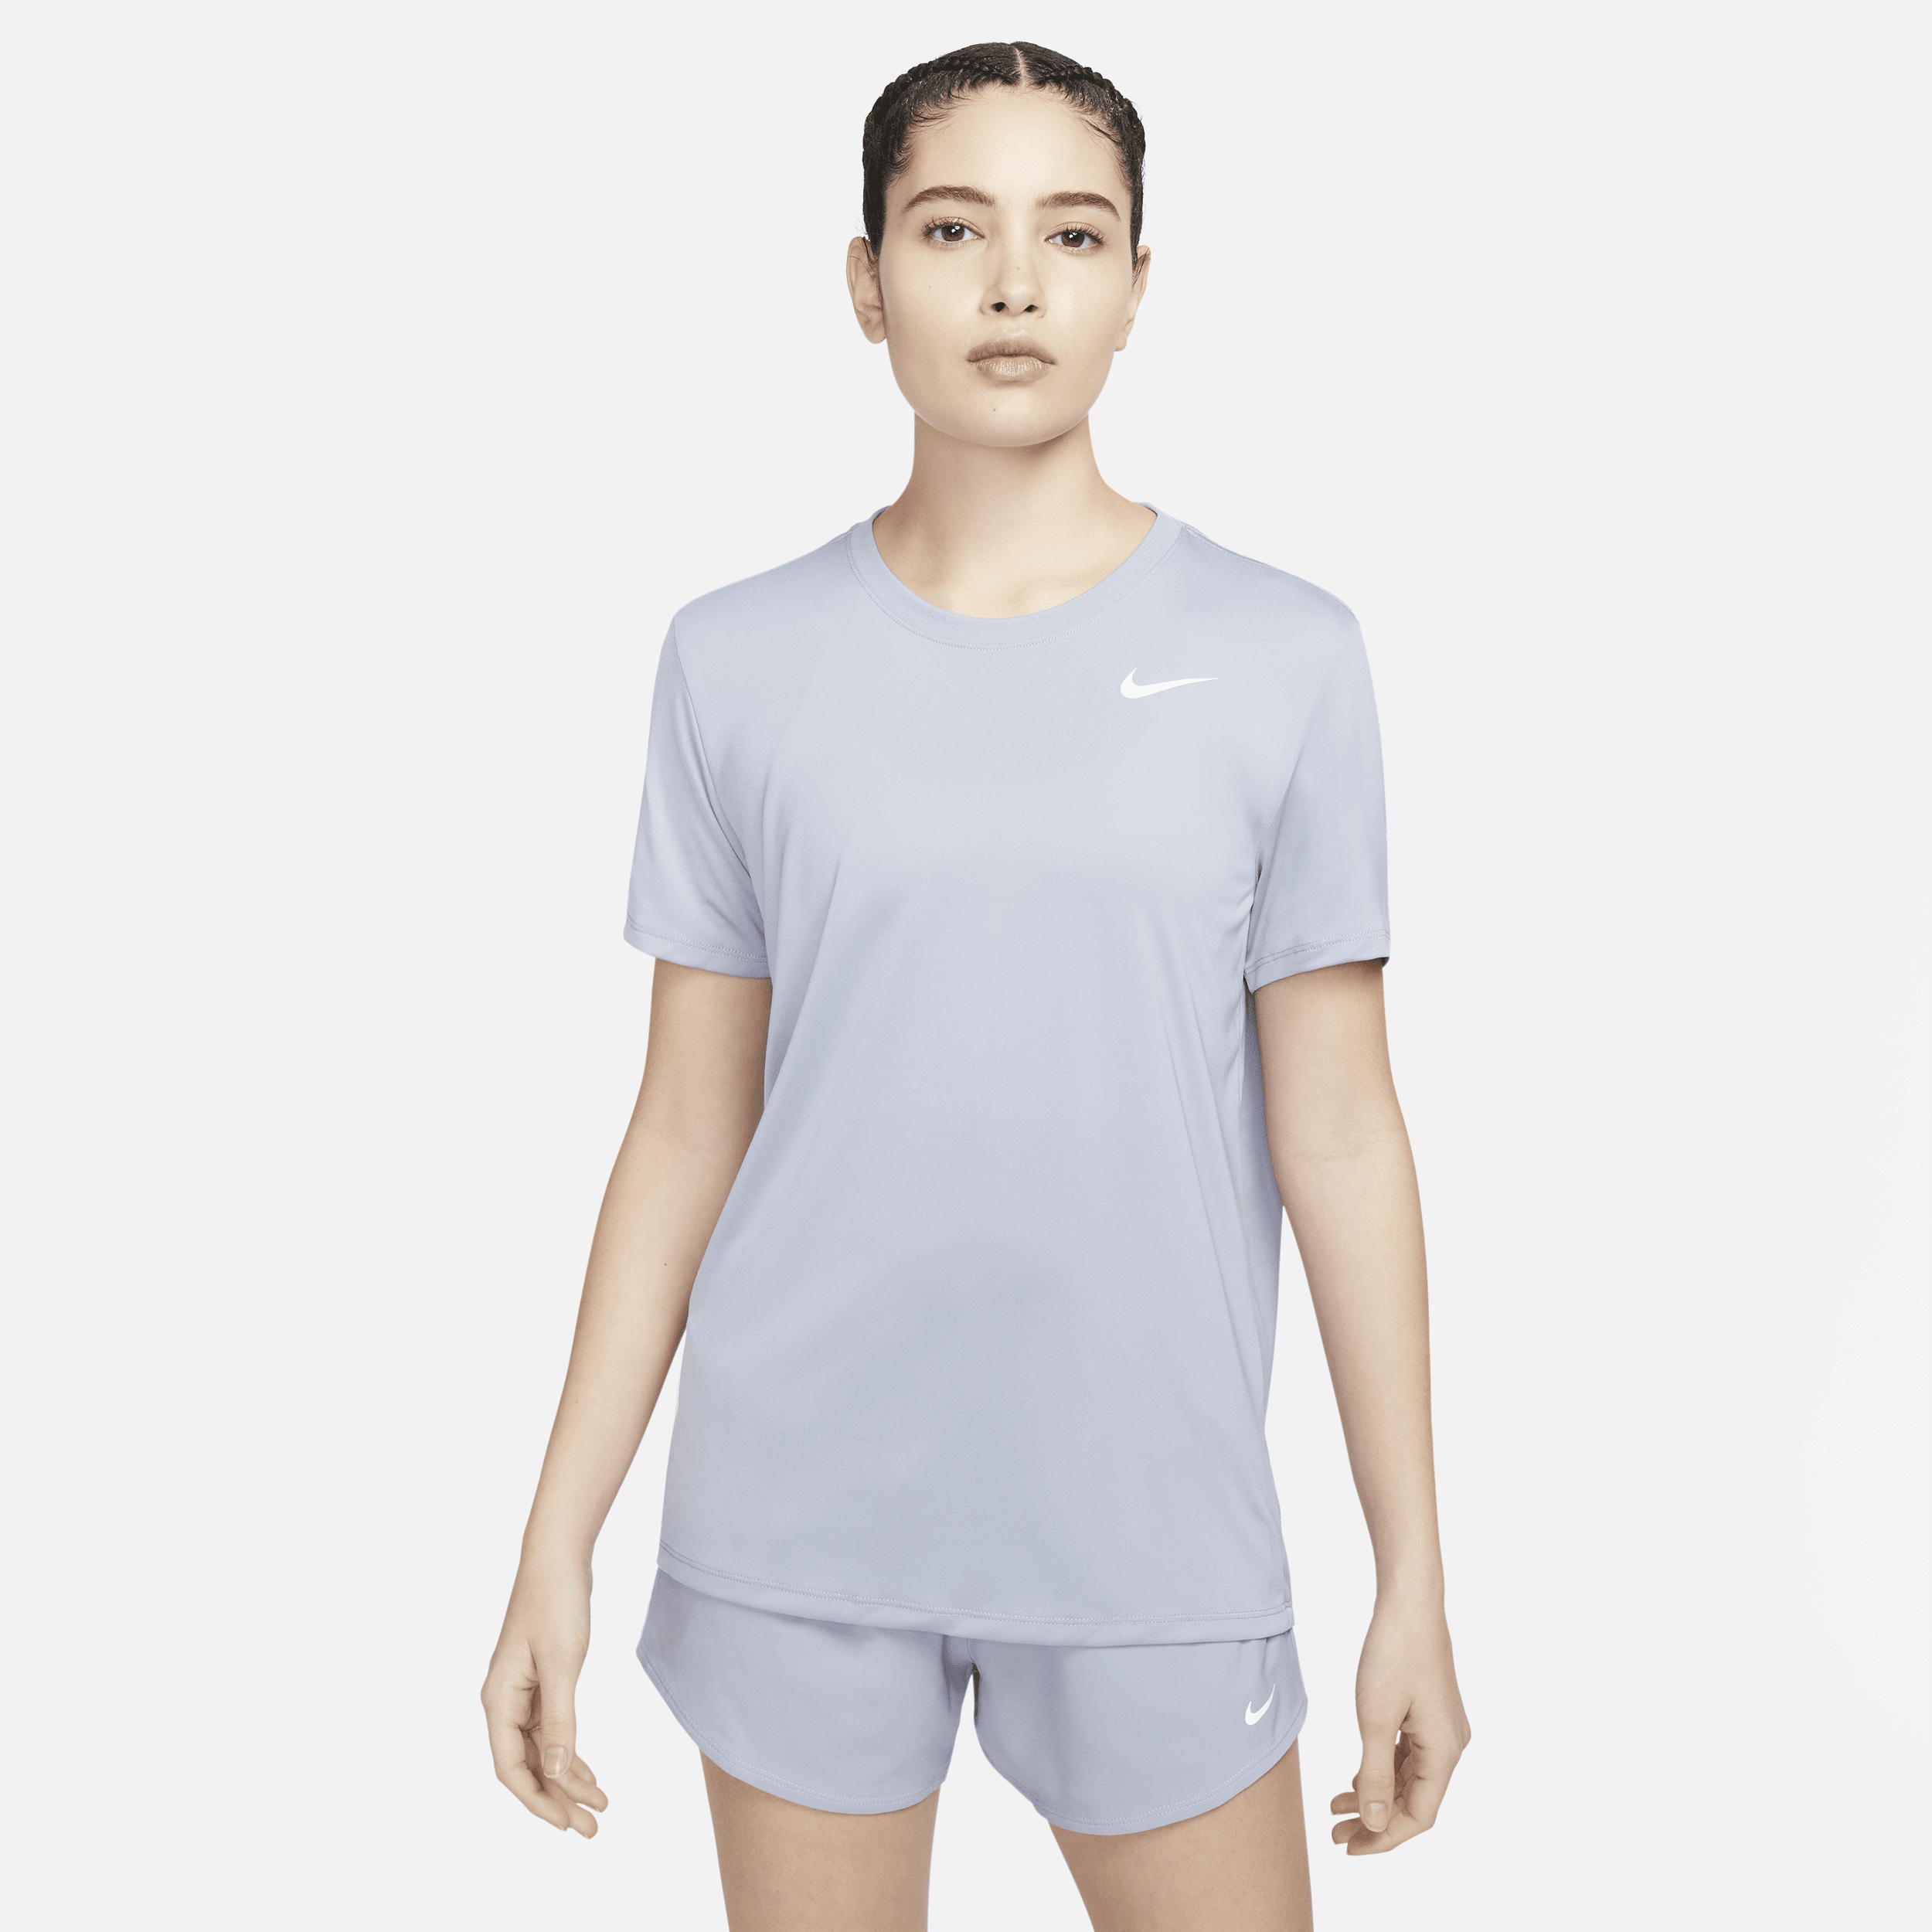 Nike Women's Dri-fit T-shirt In Purple